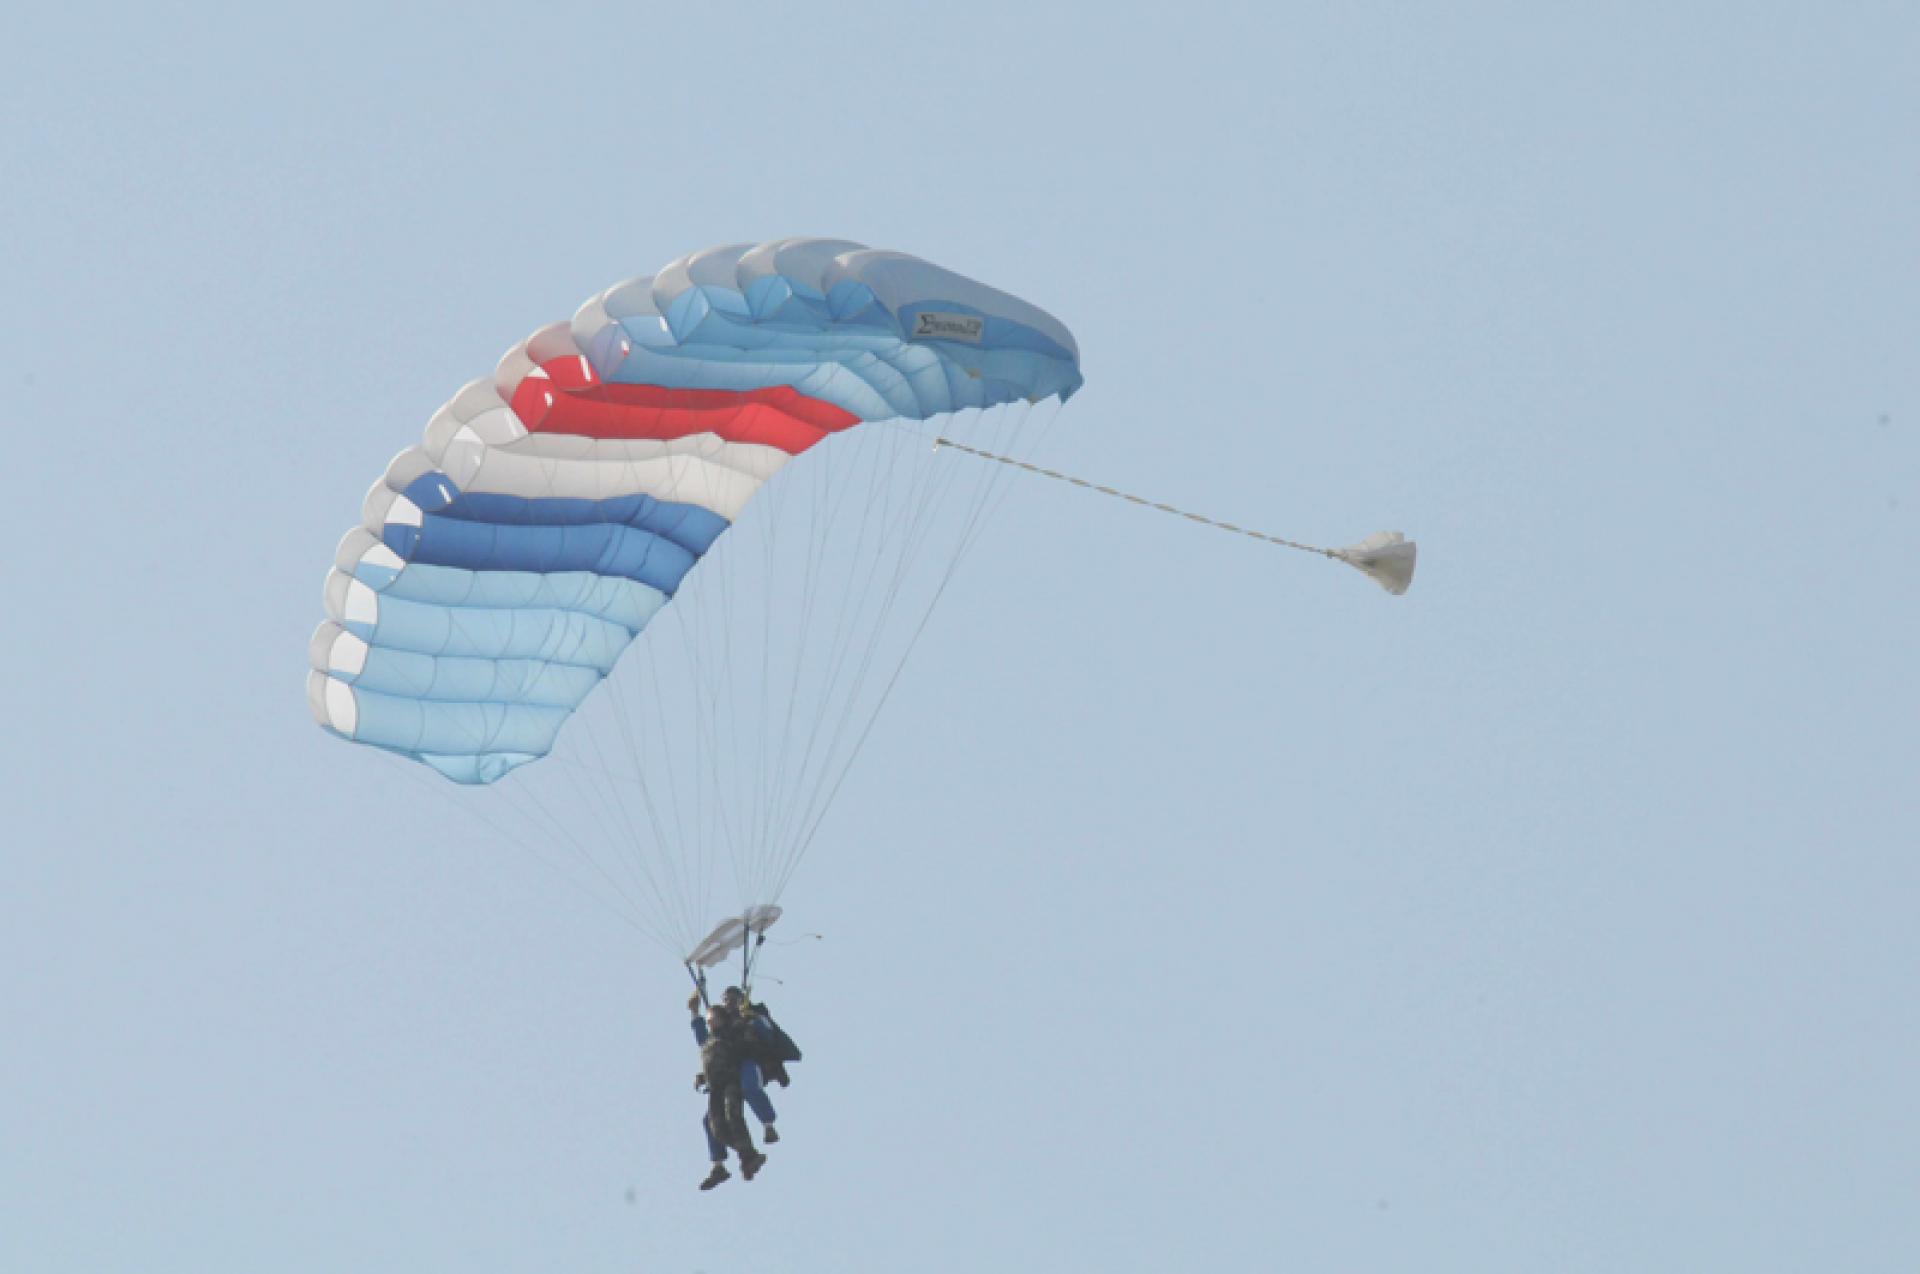 Salto con paracaídas, en tándem, de la más joven no vidente del mundo